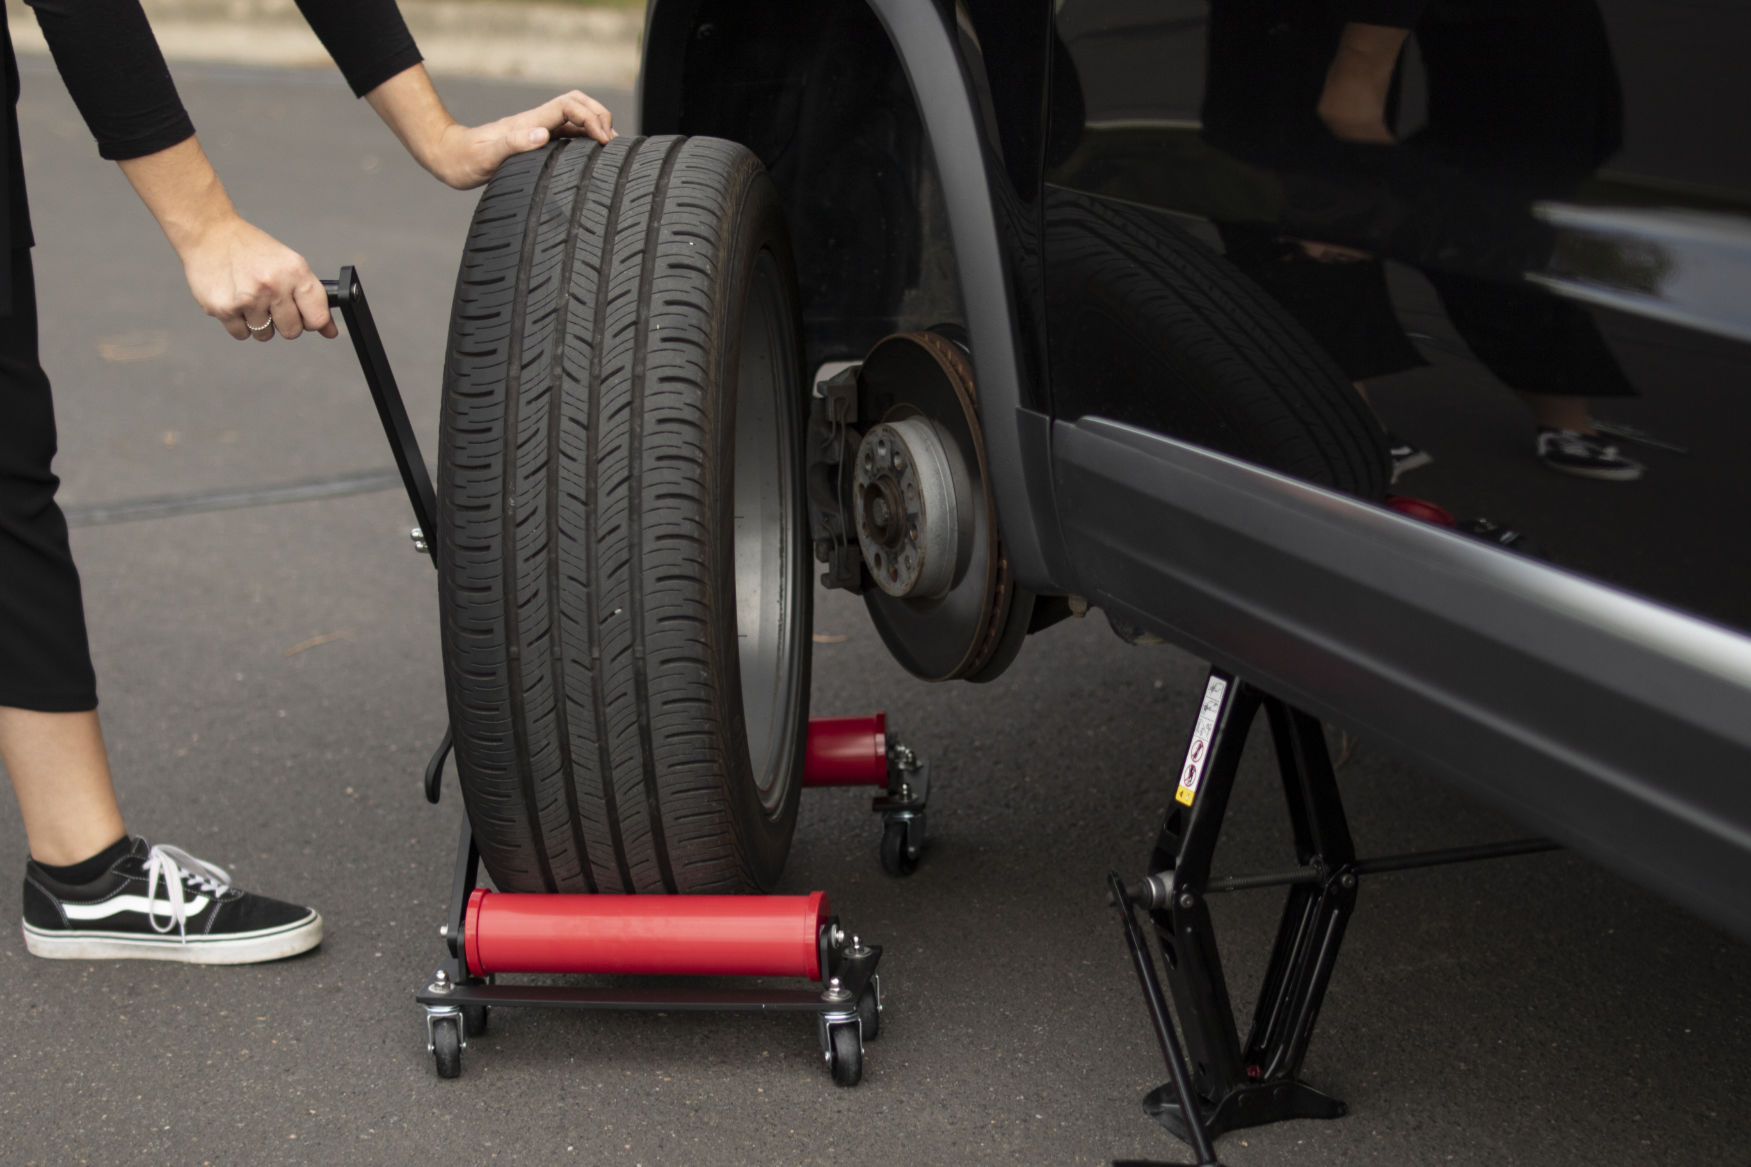 Tuto : Comment changer un pneu de voiture ?